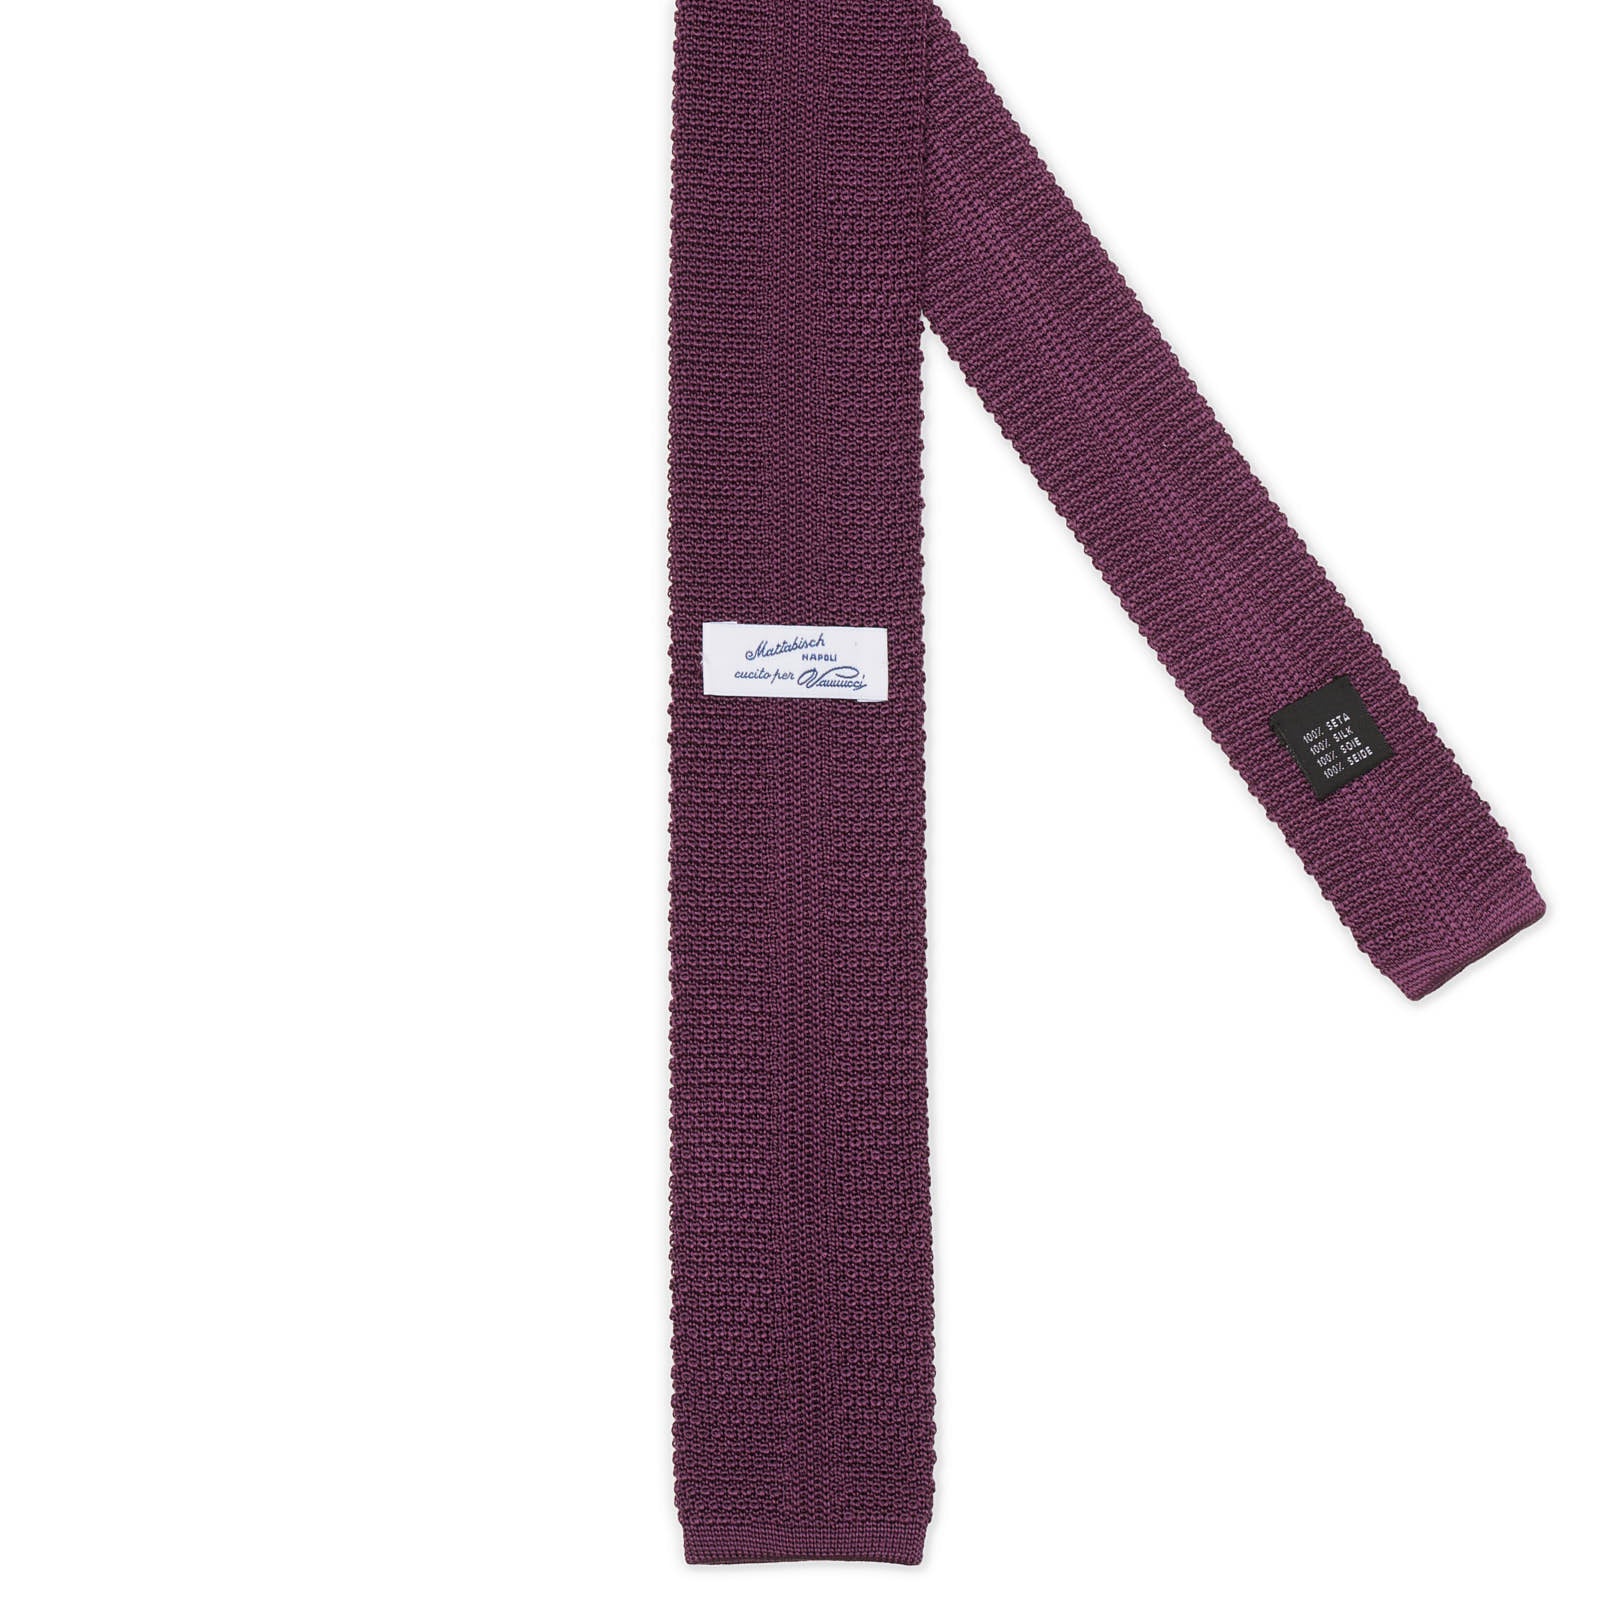 MATTABISCH FOR VANNUCCI Dark Purple Silk Knit Tie NEW